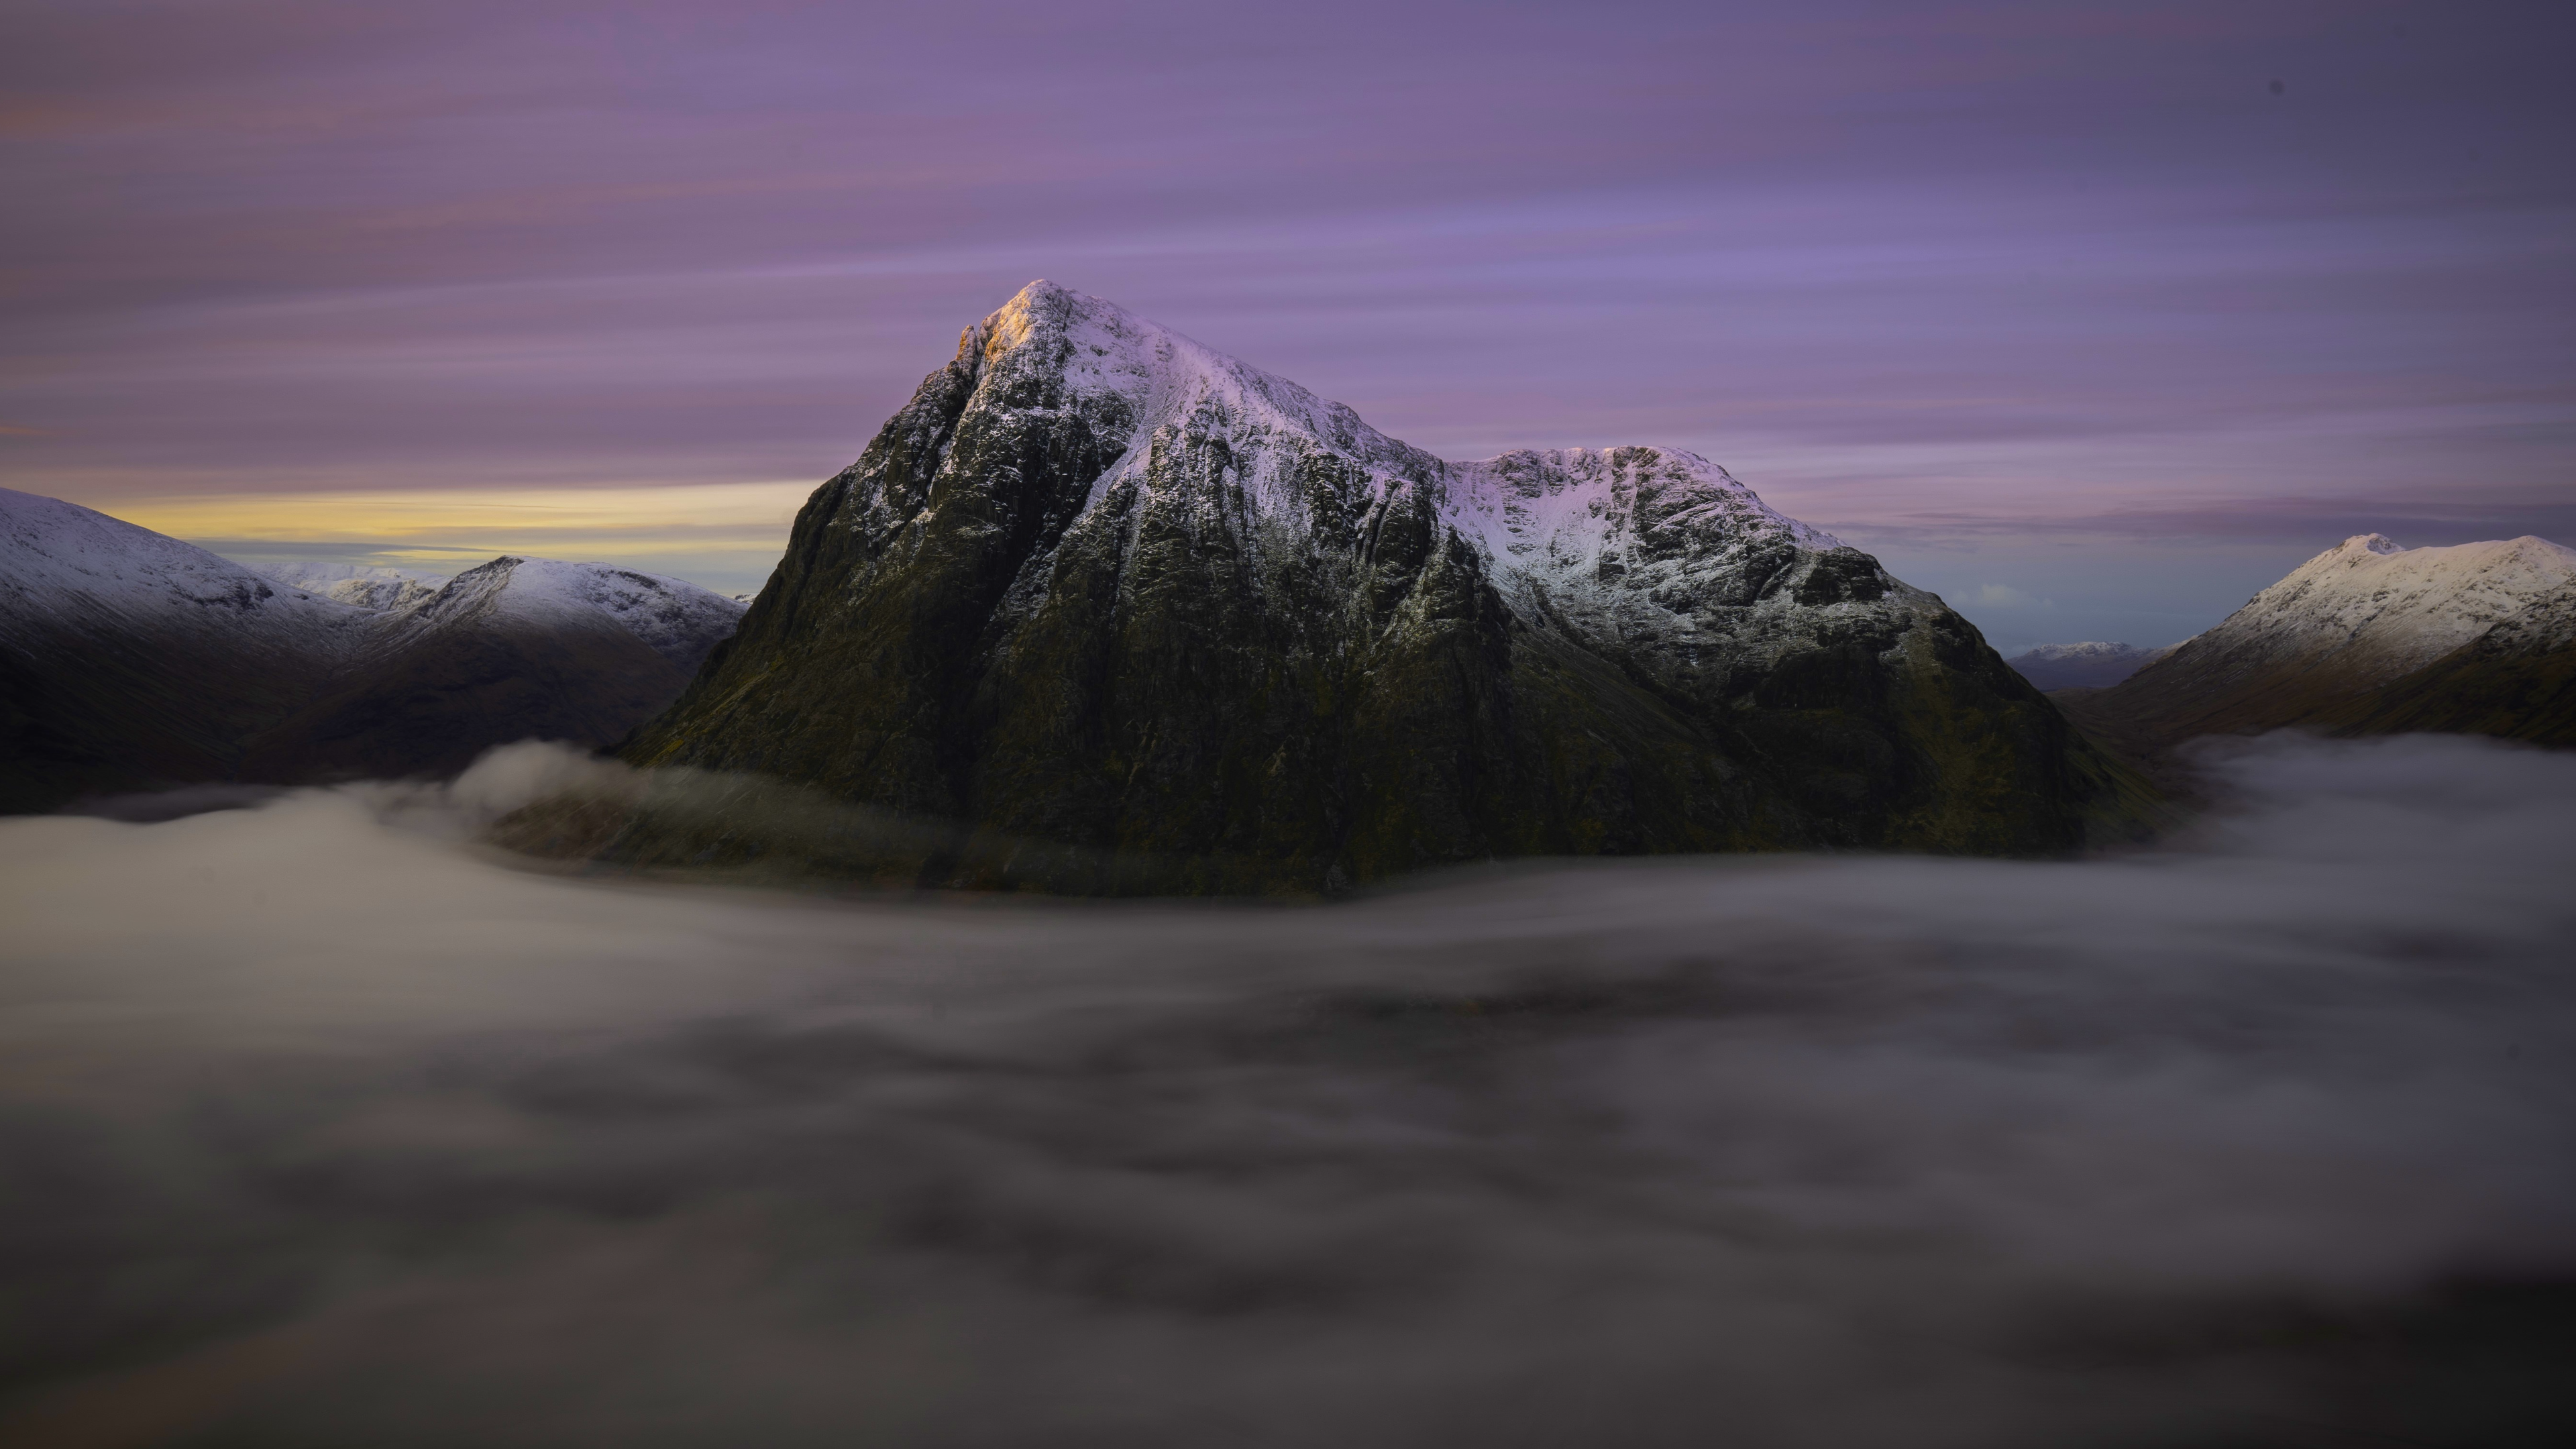 General 3840x2160 nature landscape mountains clouds mist sky snow snowy peak Buachaille Etive Mòr Scotland